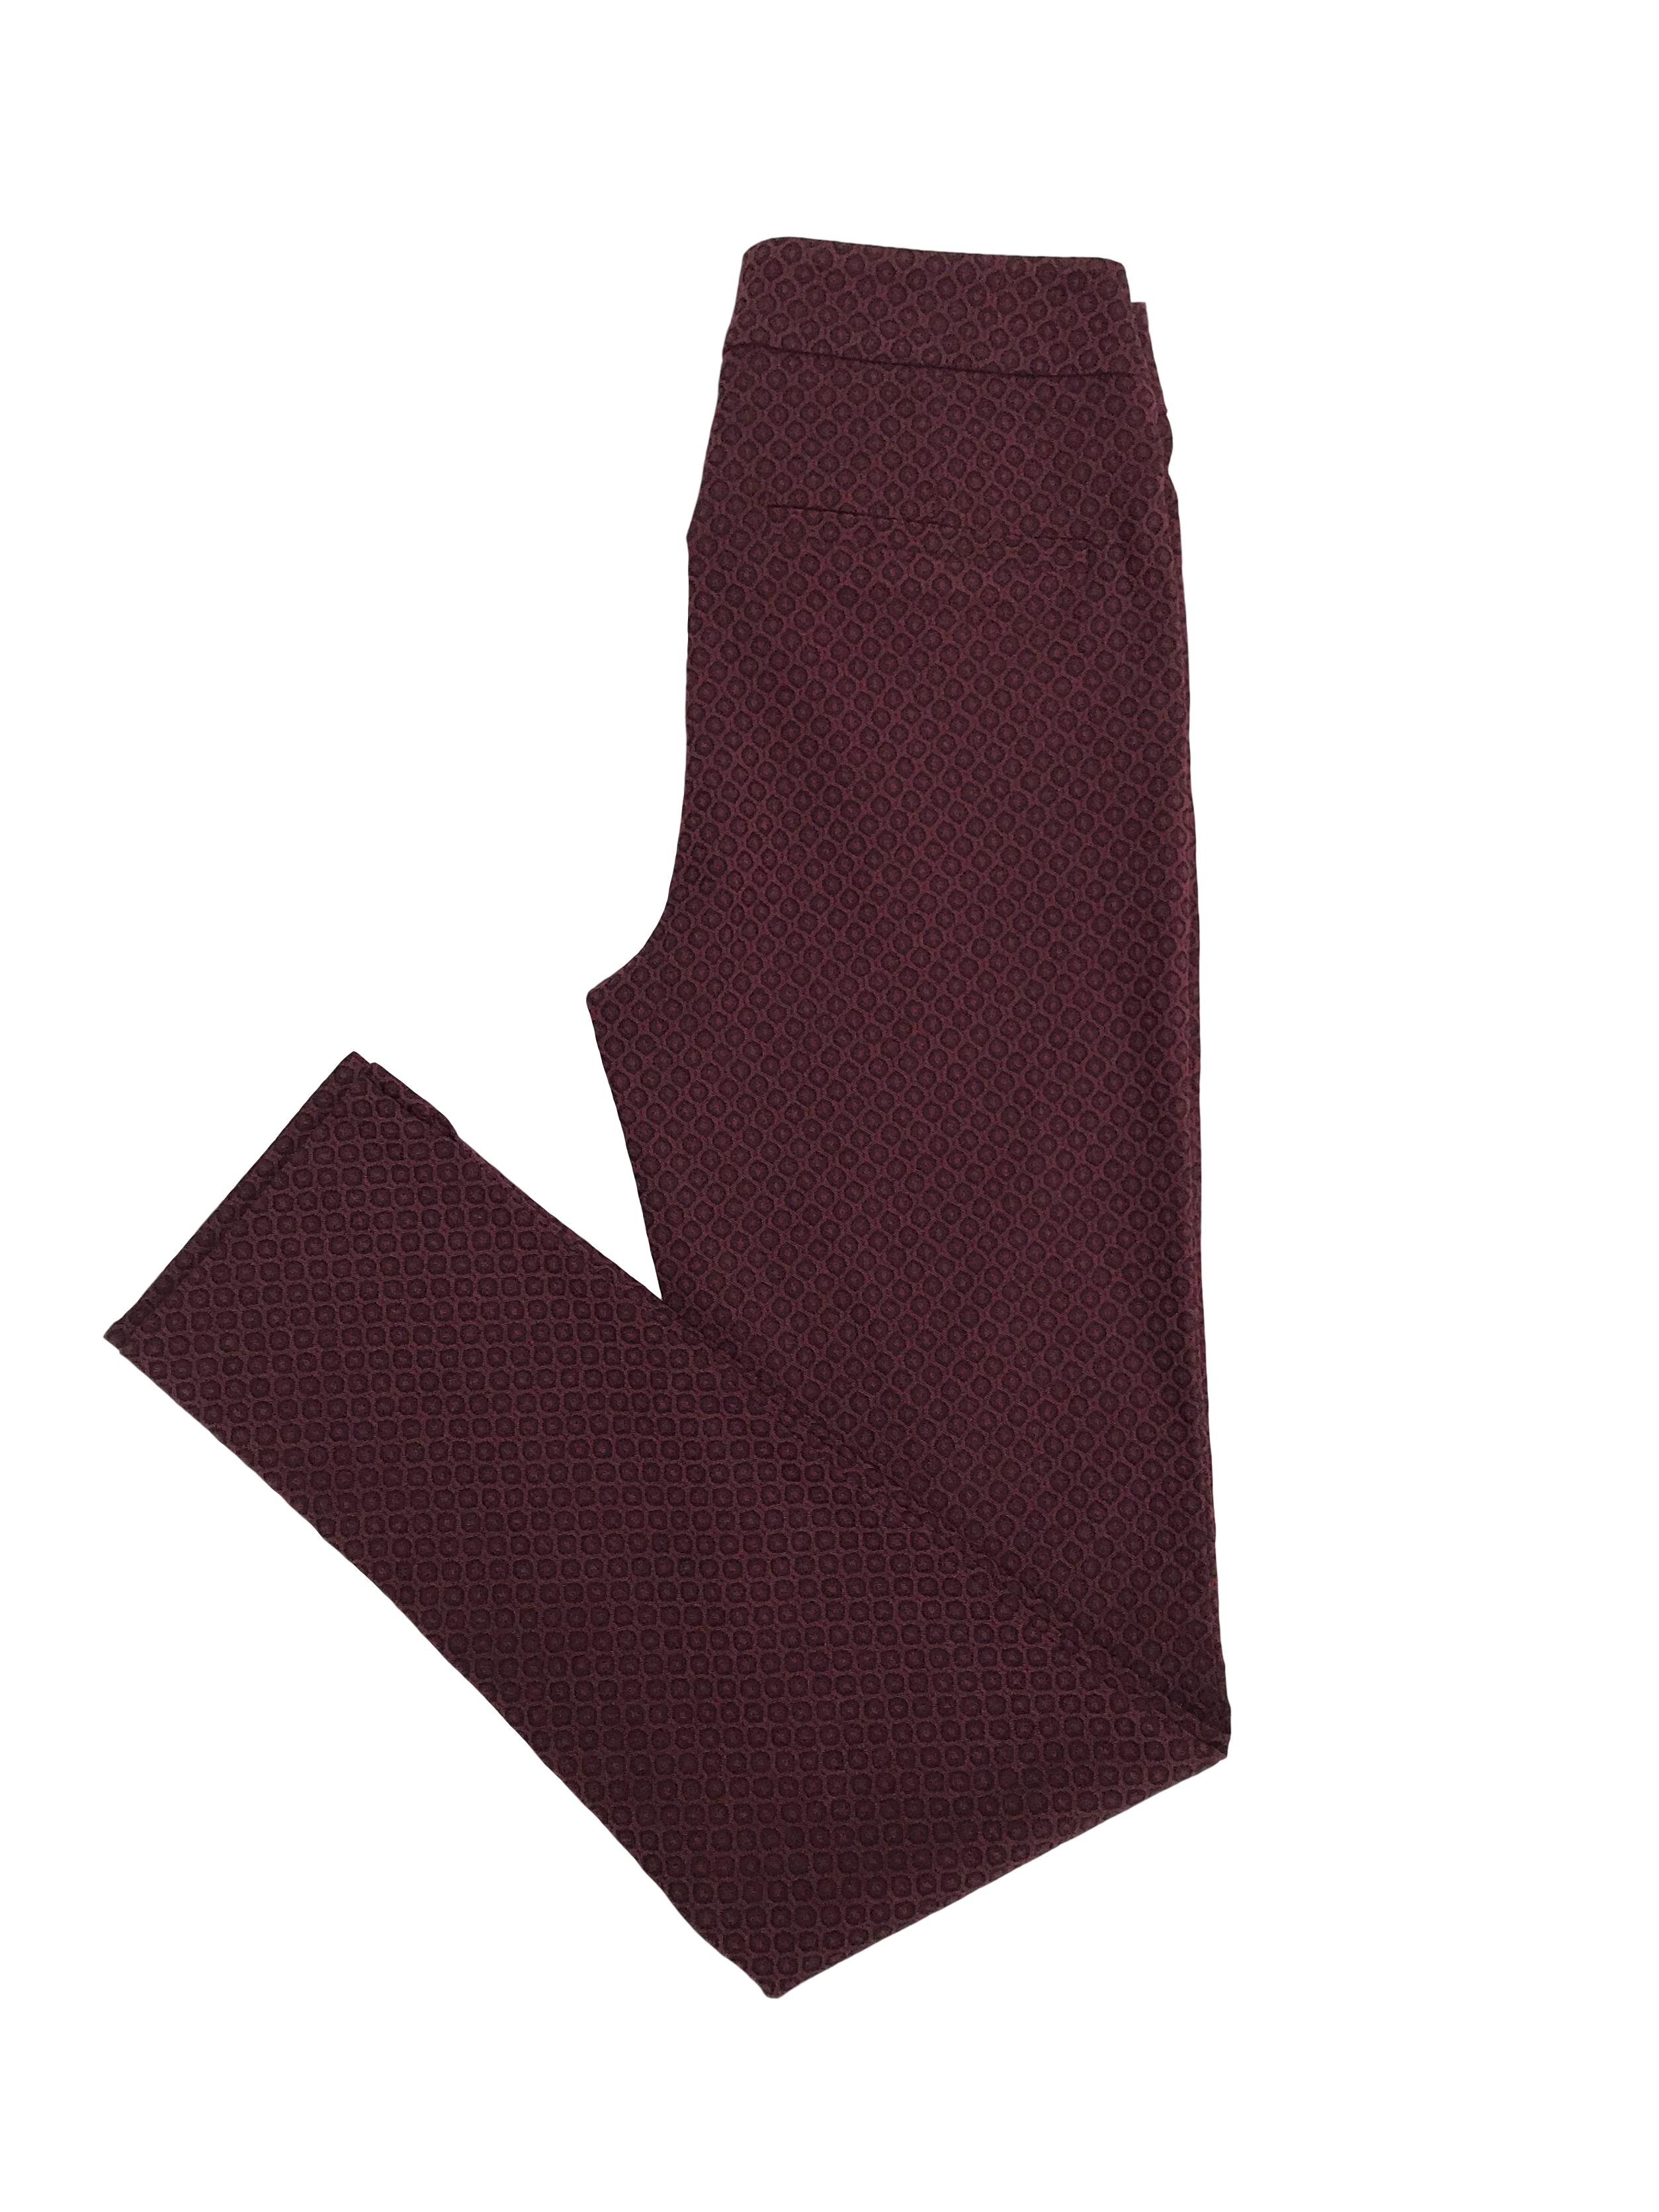 Pantalón Mentha&chocolate guinda y negro, pitillo ligeramente stretch con cierre lateral. Cintura 70cm